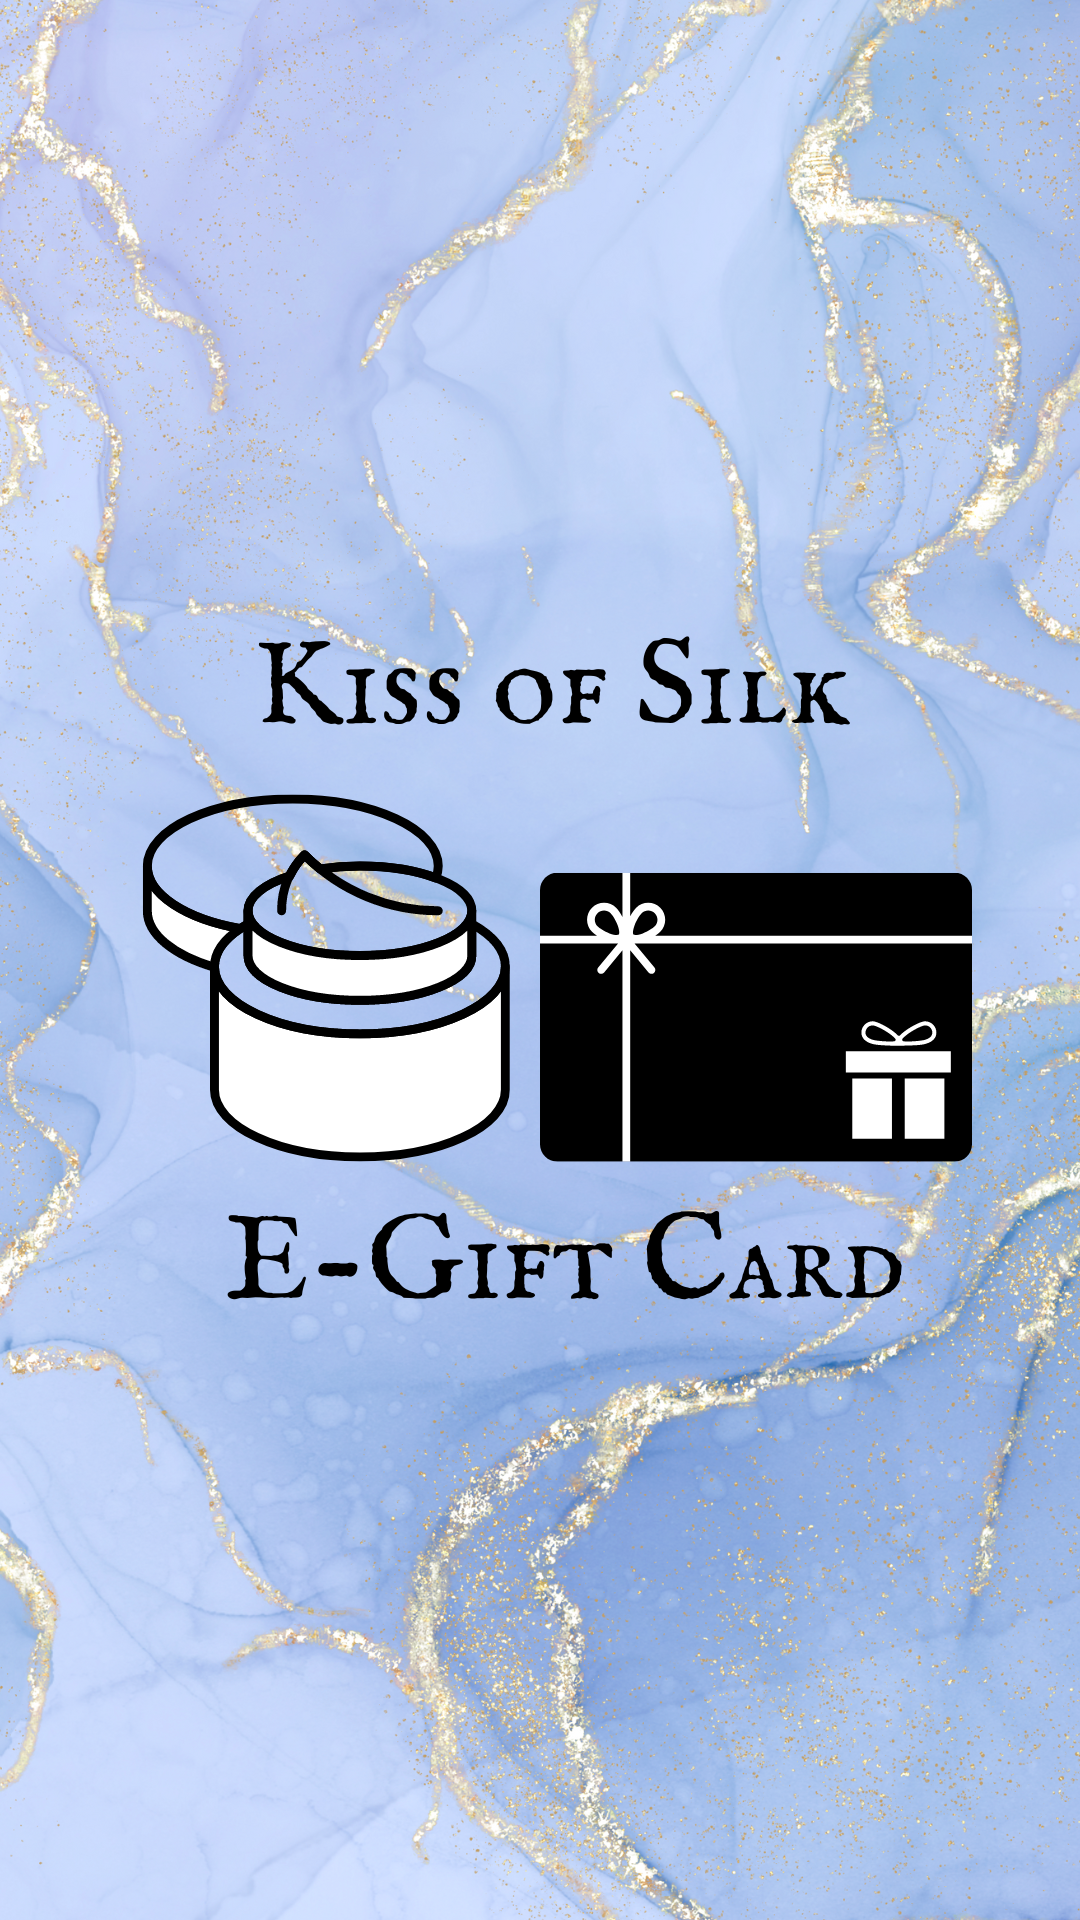 Kiss of Silk E-Gift Card